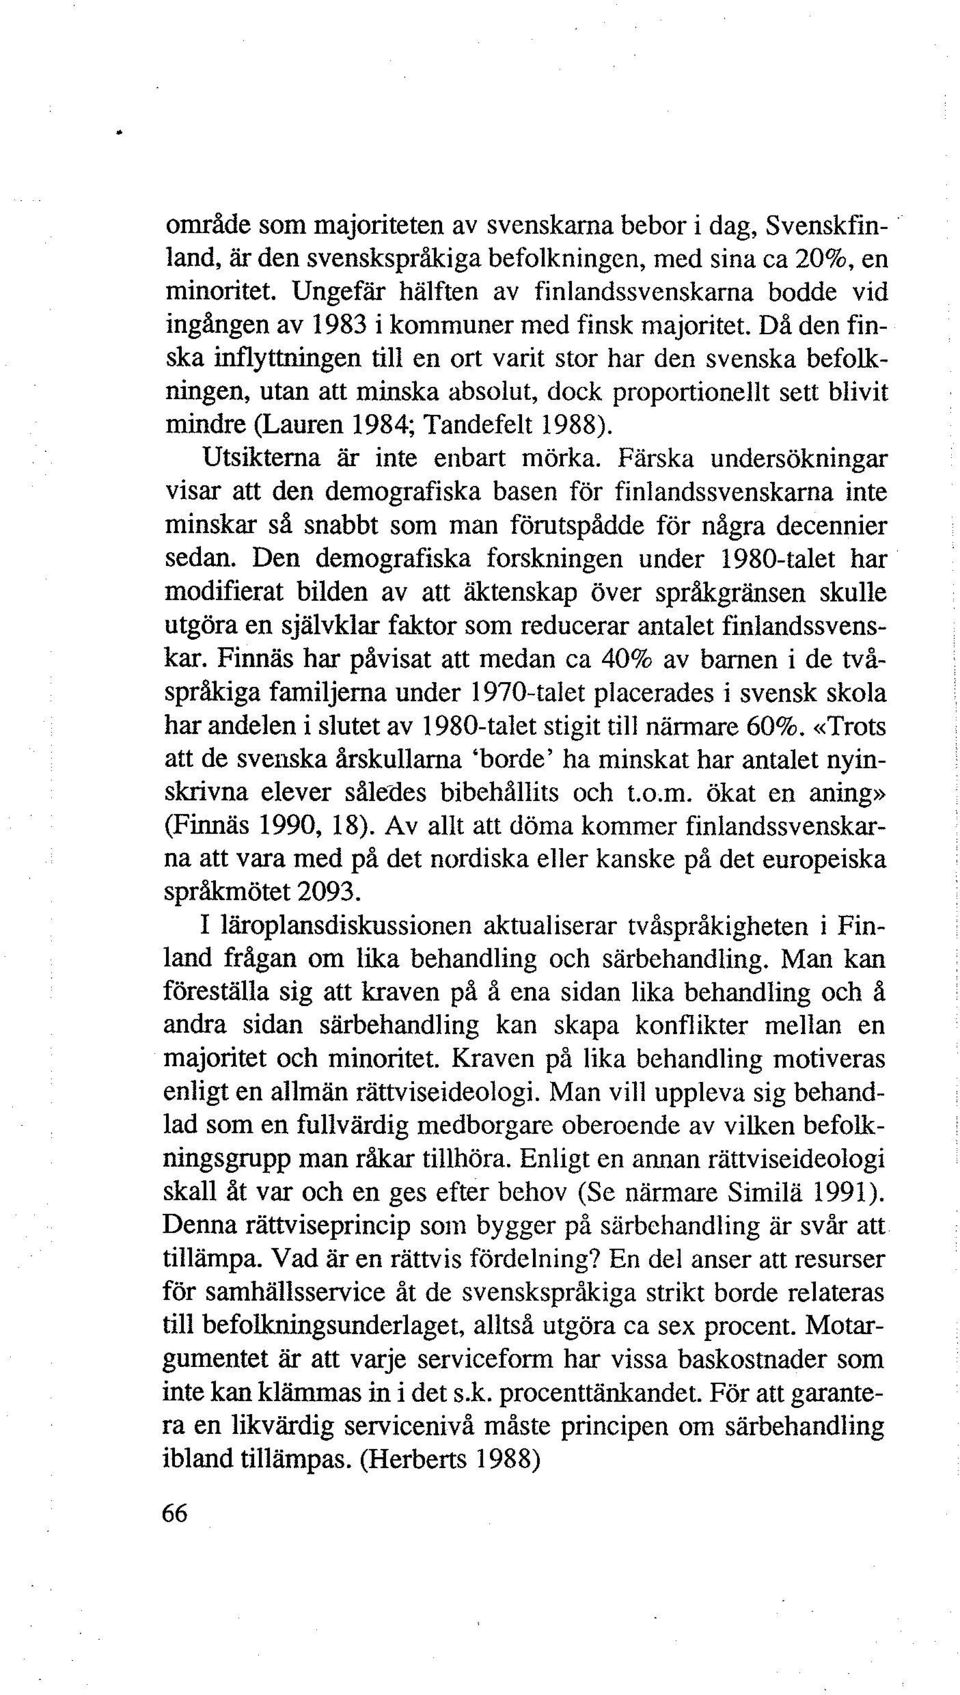 Då den finska inflyttningen till en ort varit stor har den svenska befolkningen, utan att minska absolut, dock proportionellt sett blivit mindre (Lauren 1984; Tandefelt 1988).